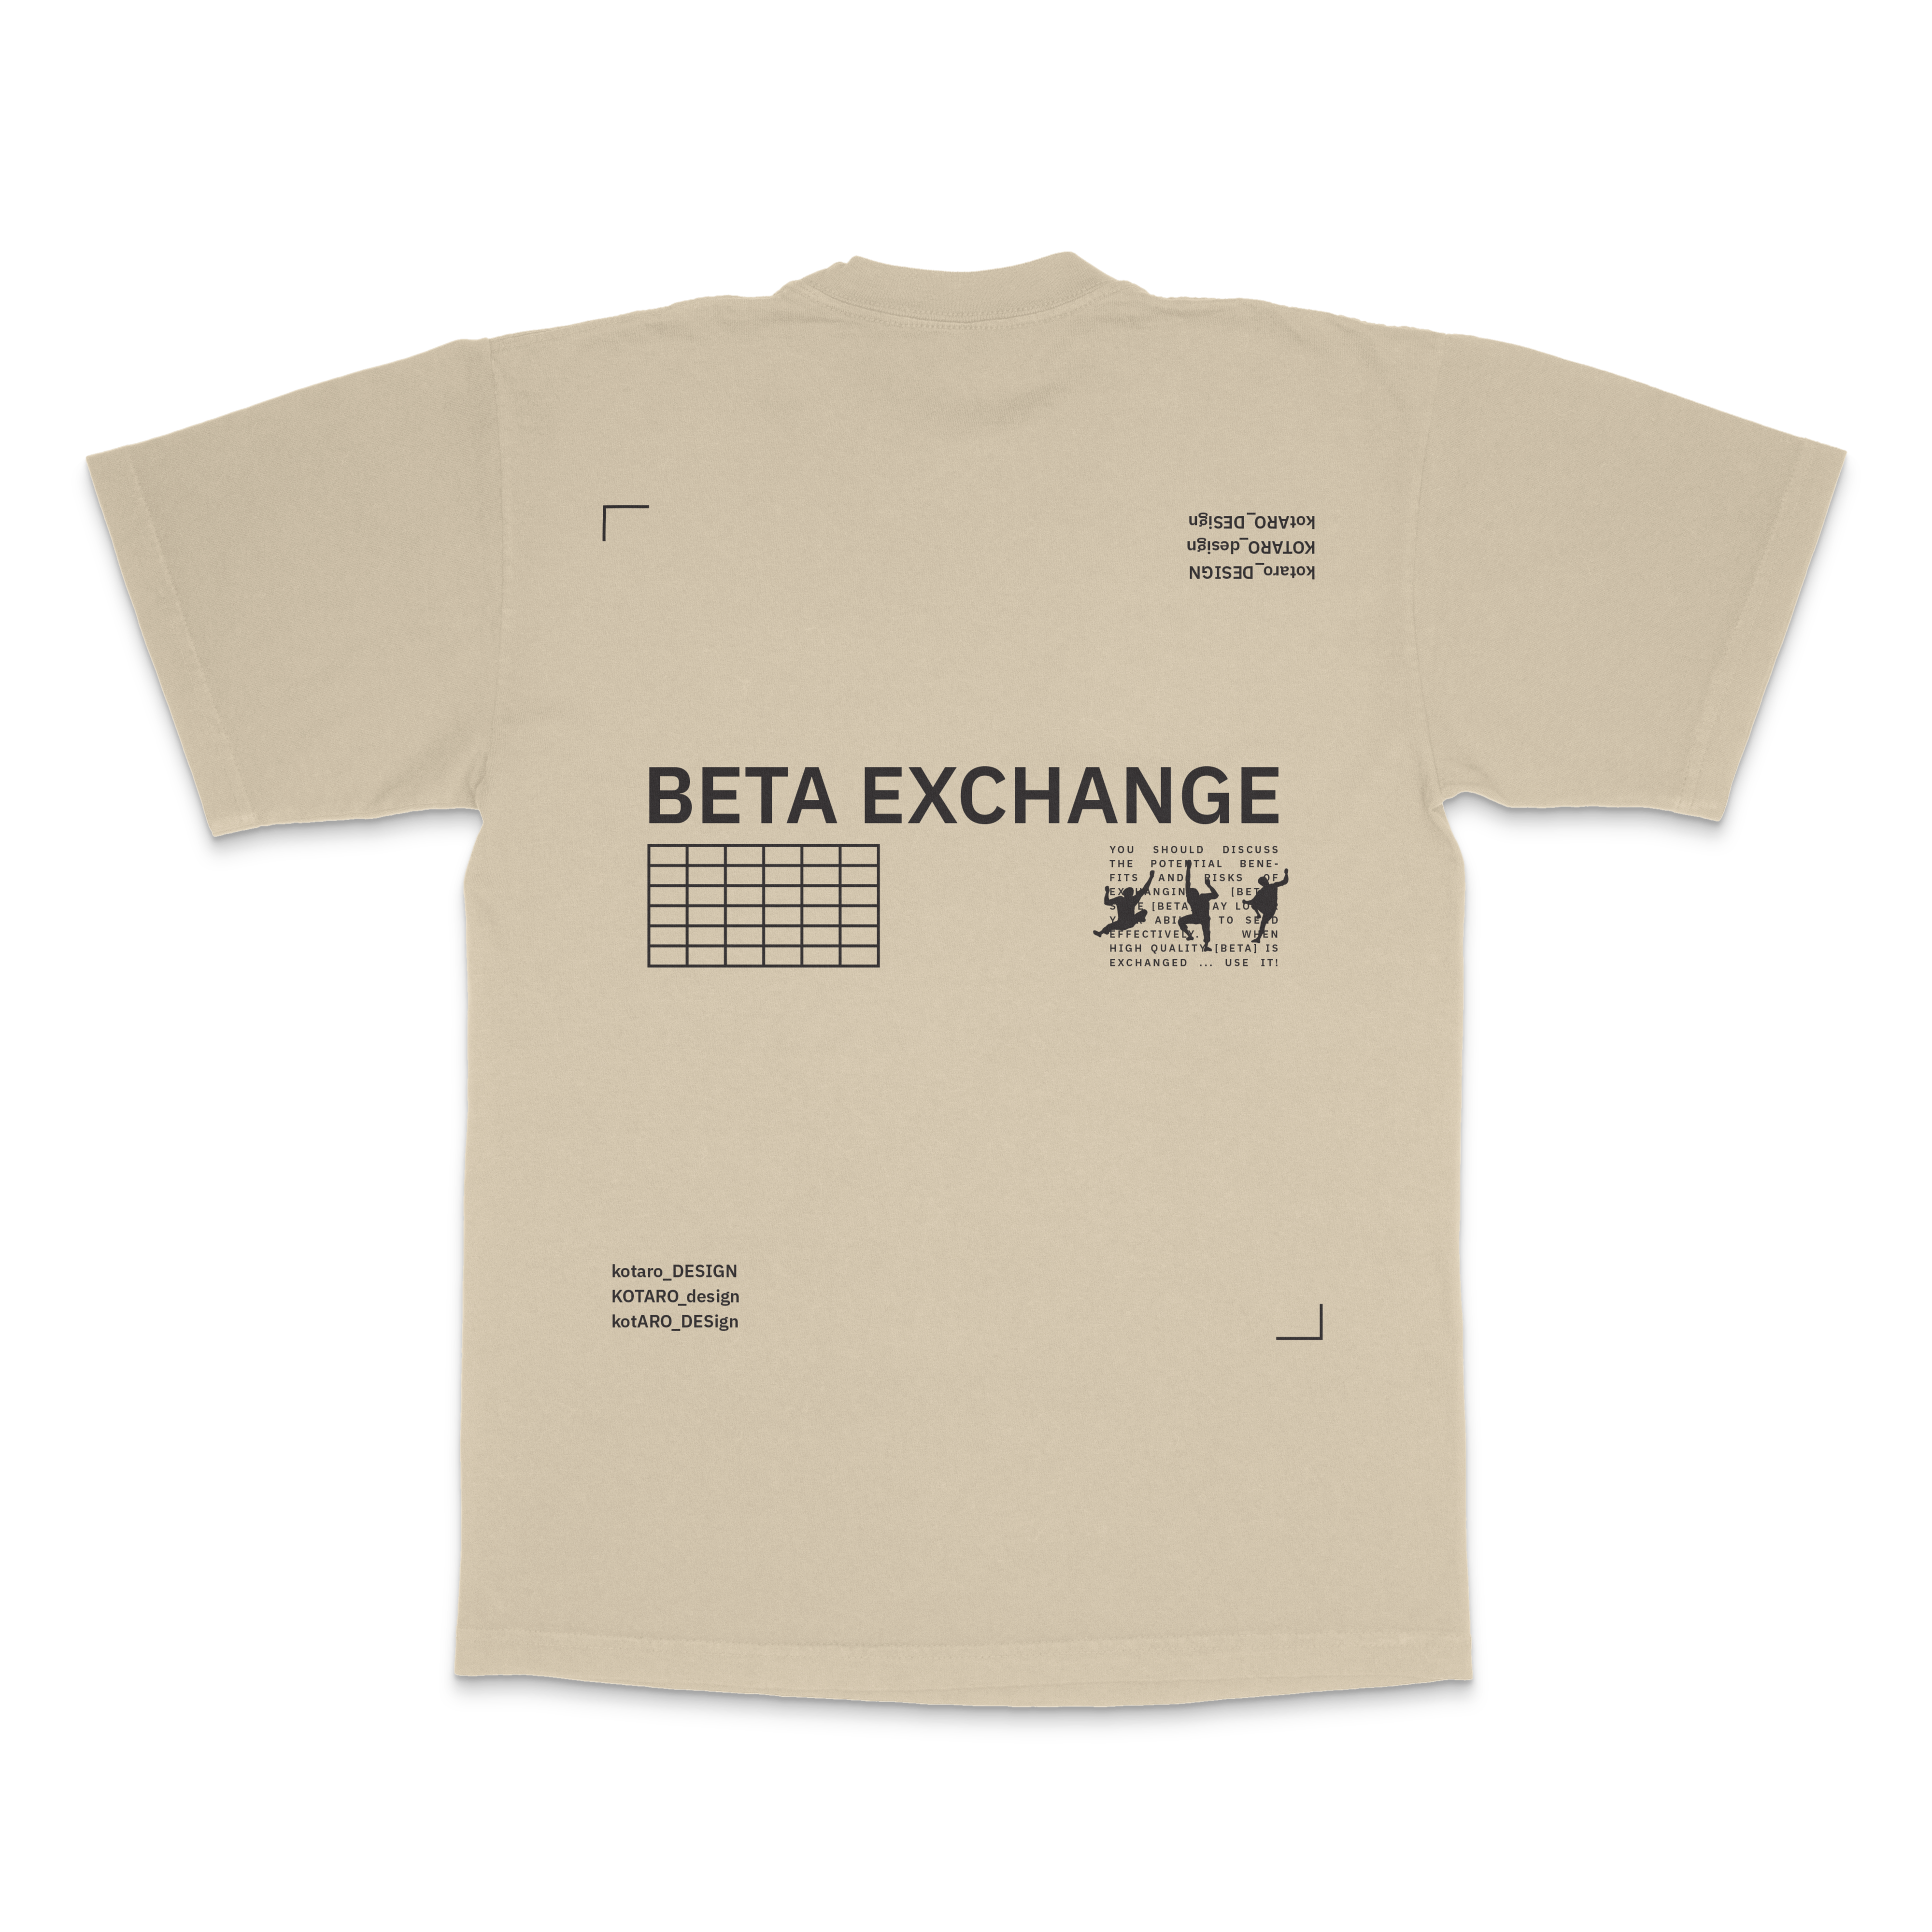 BETA EXCHANGE